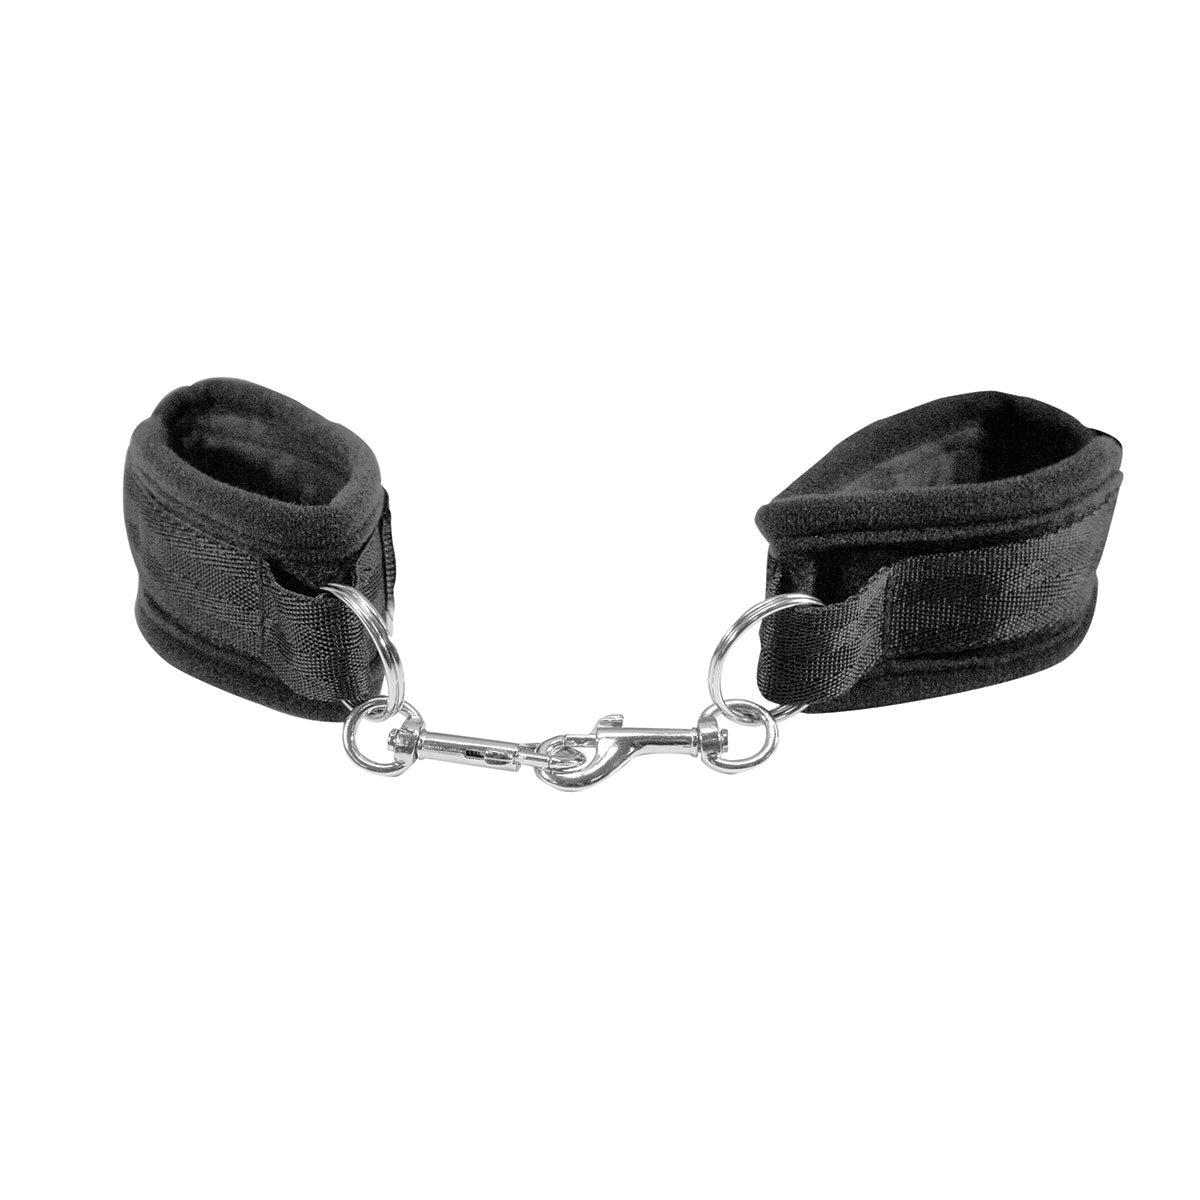 Sex & Mischief Beginner's Handcuffs